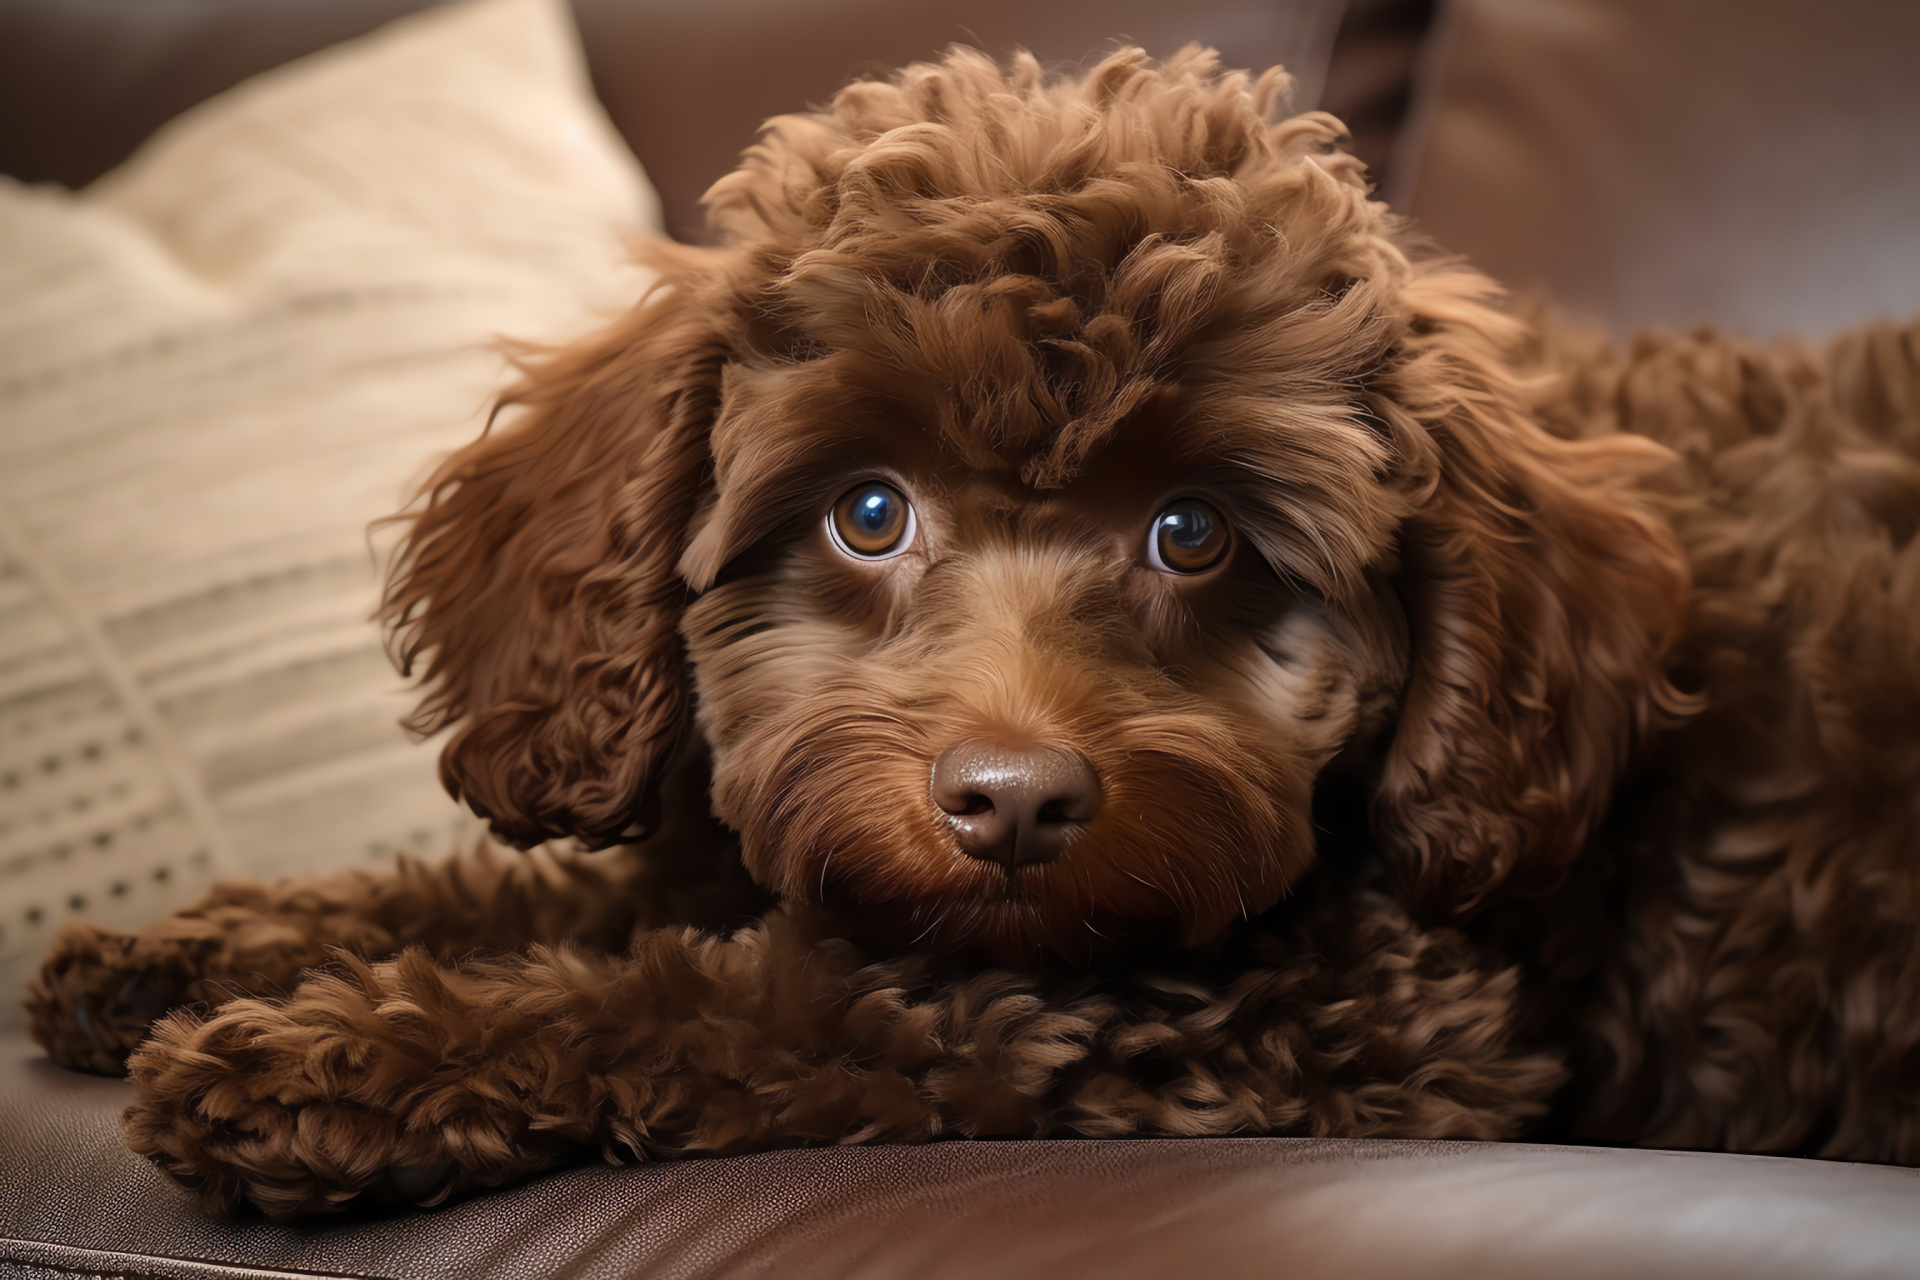 Canine Poodle, Chocolate Poodle, Soft Poodle fur, Friendly Poodle demeanor, Indoor pet companion, HD Desktop Image